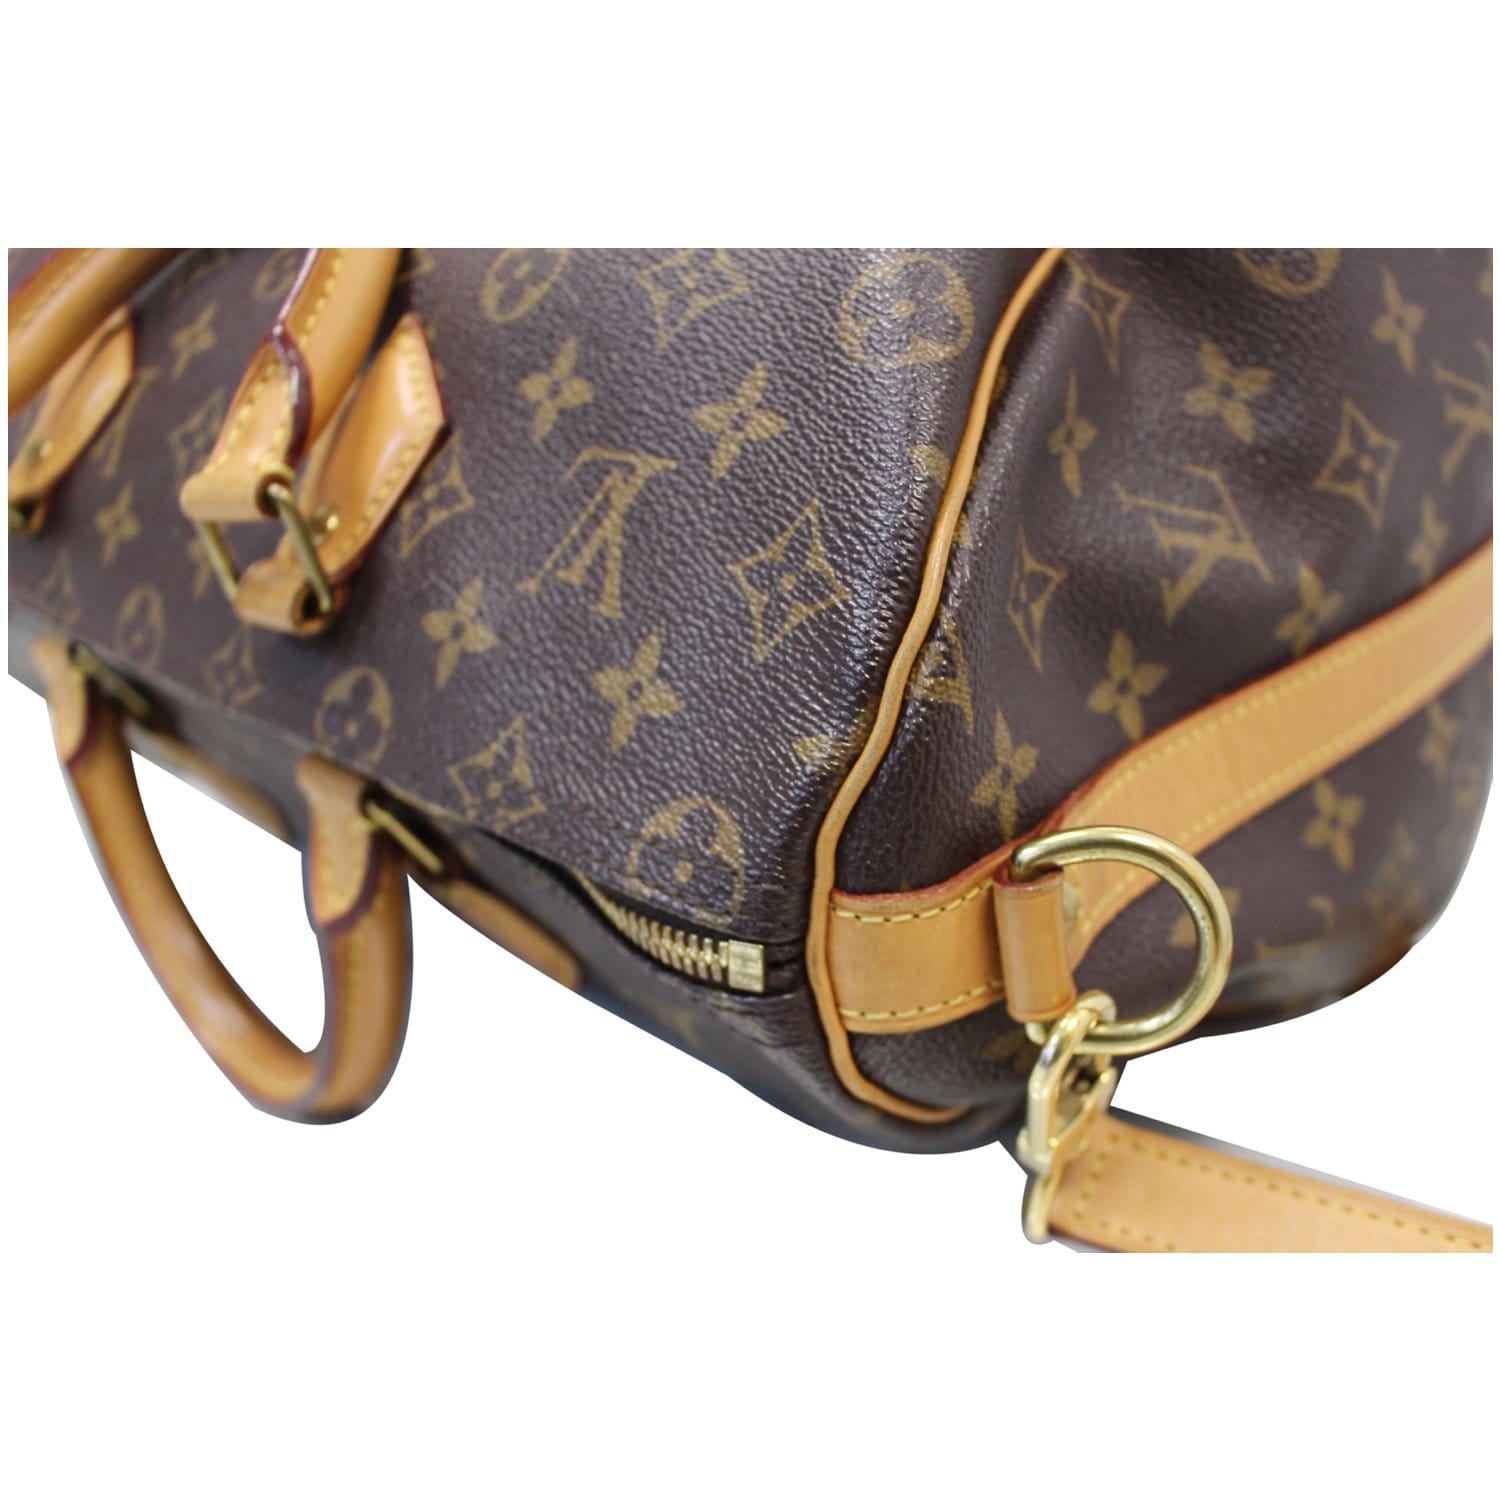 Louis Vuitton Speedy Doctor Bag